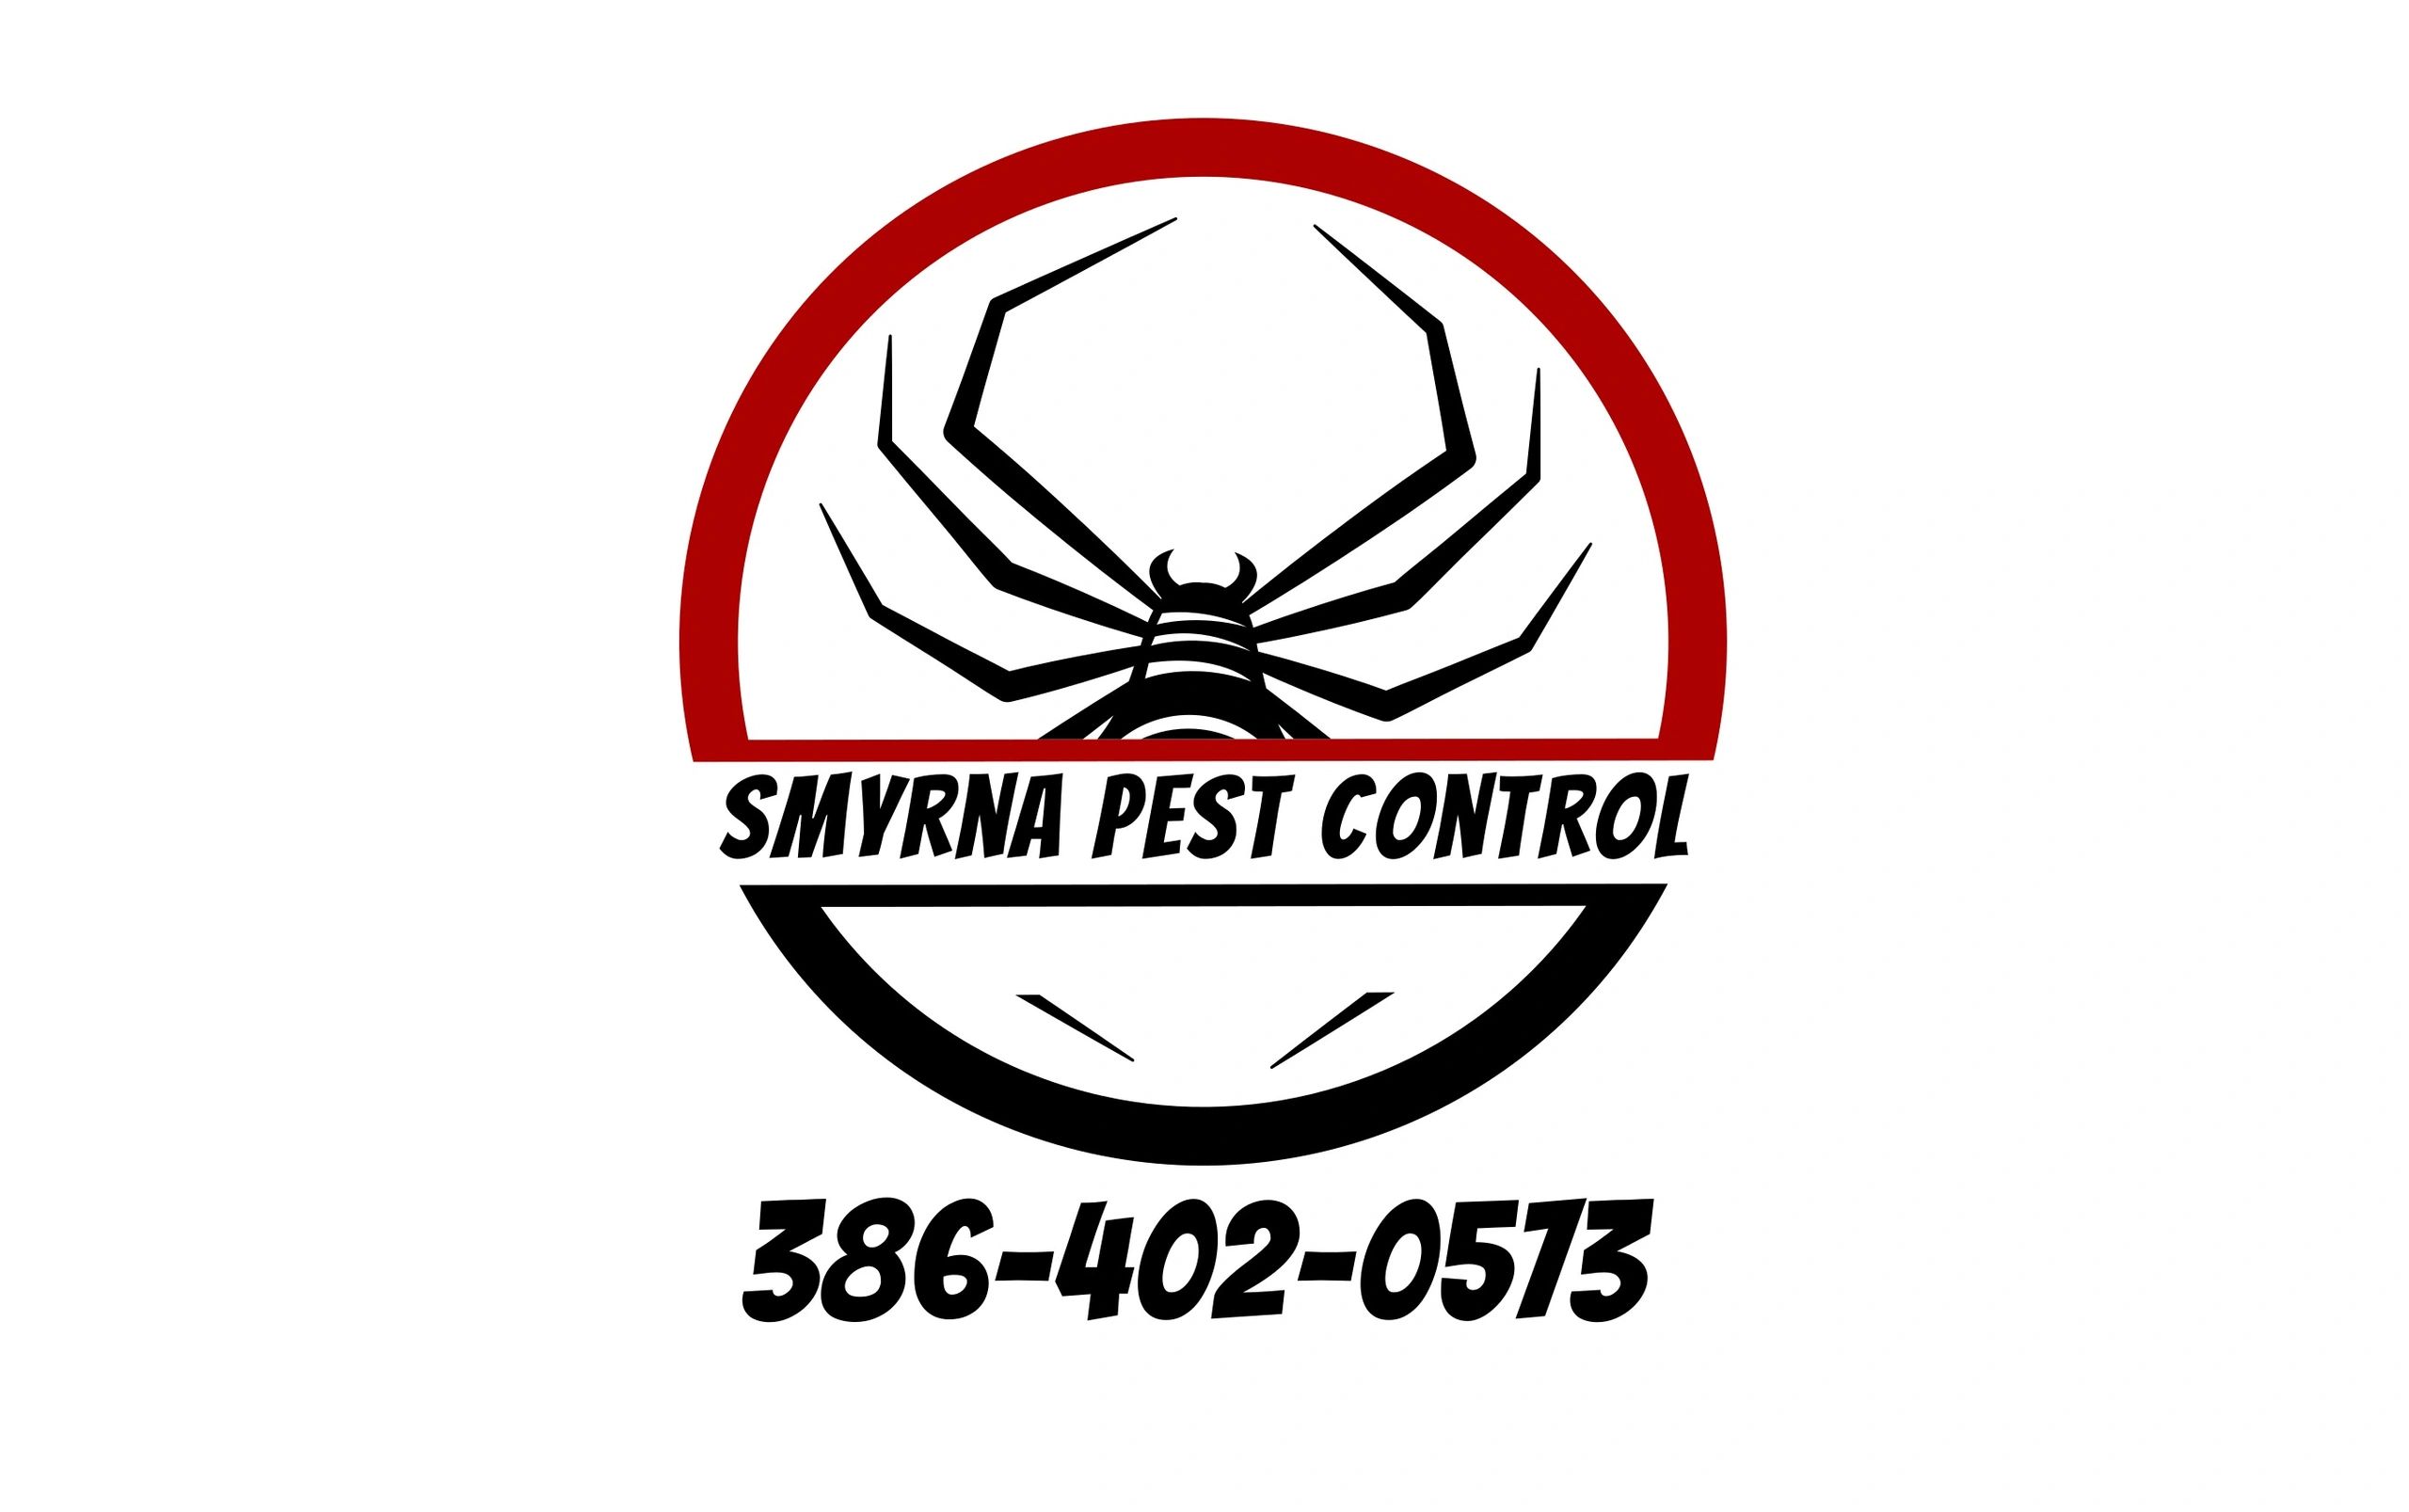 Smyrna Pest Control Logo
386-402-0573